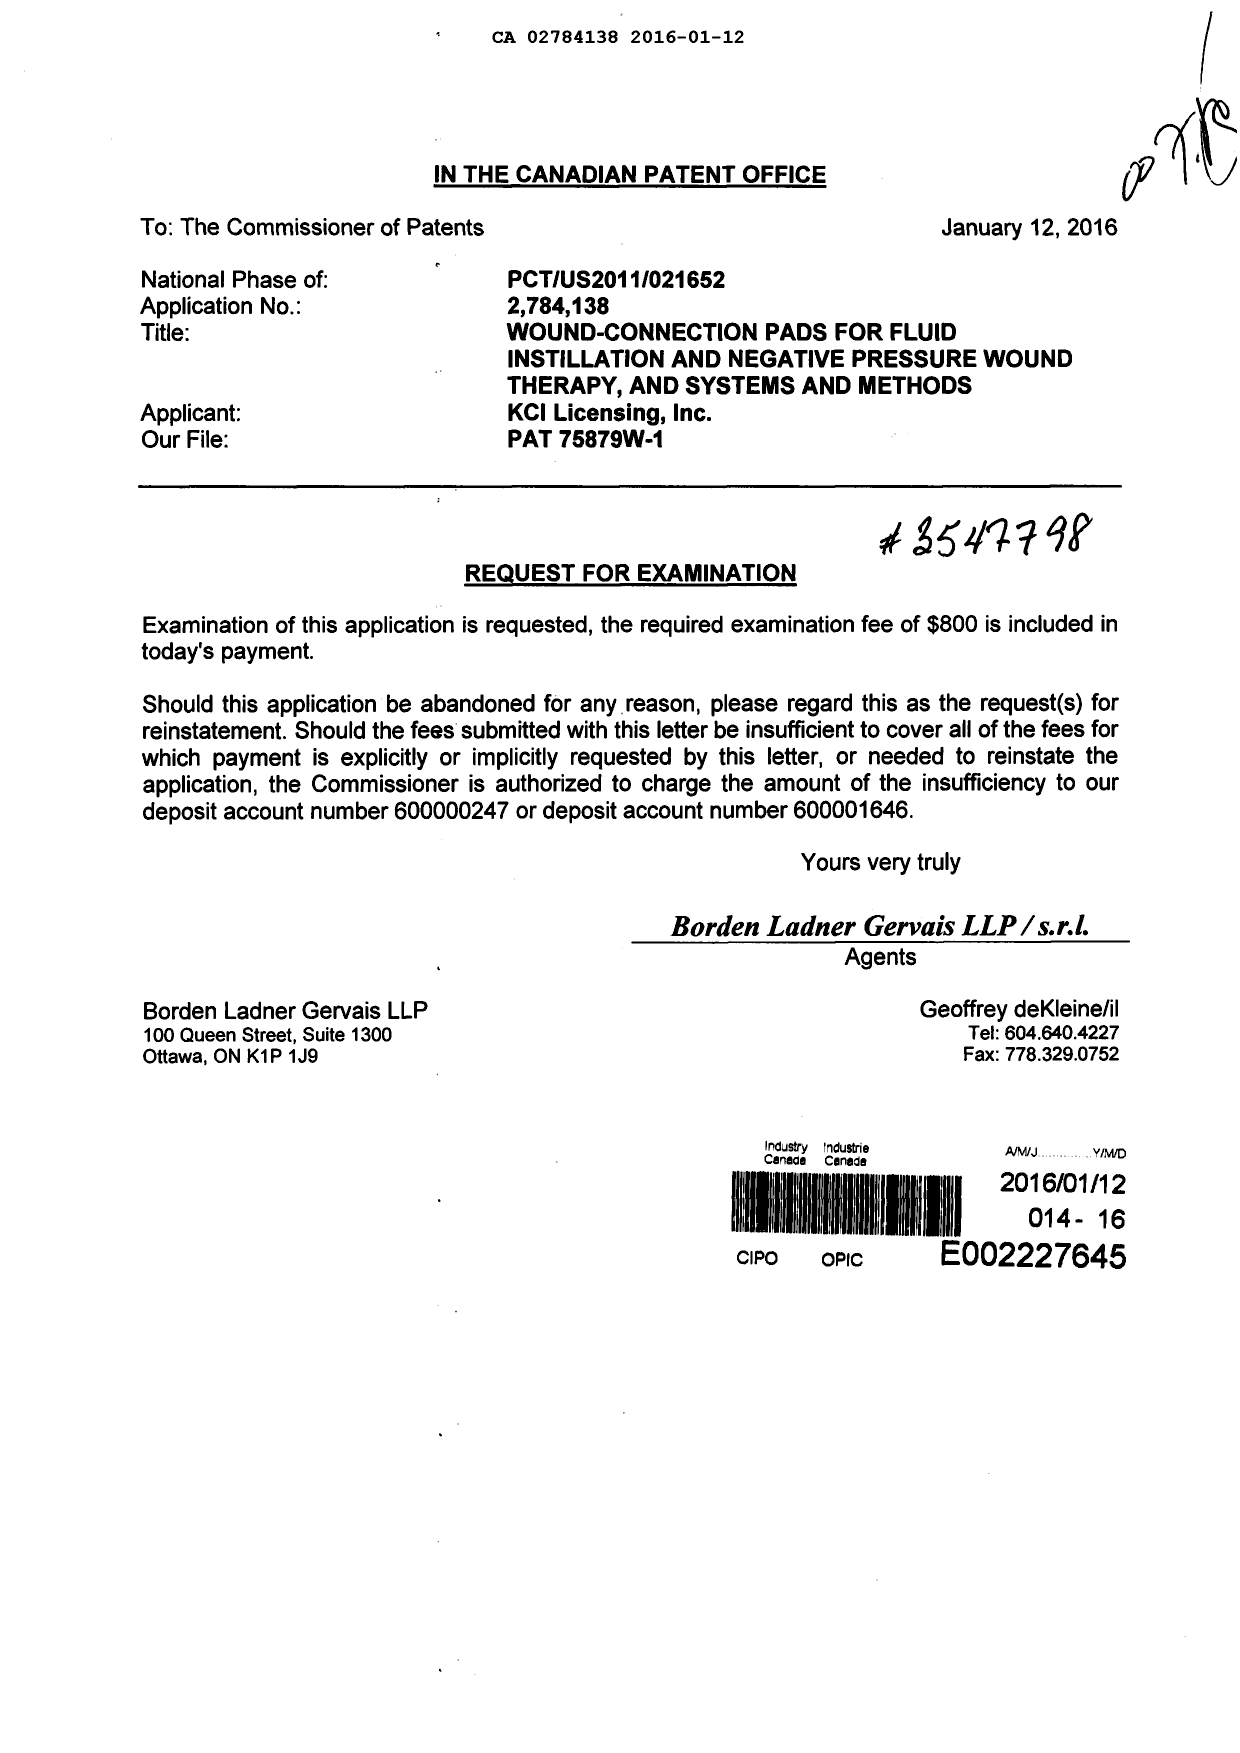 Document de brevet canadien 2784138. Requête d'examen 20160112. Image 1 de 1